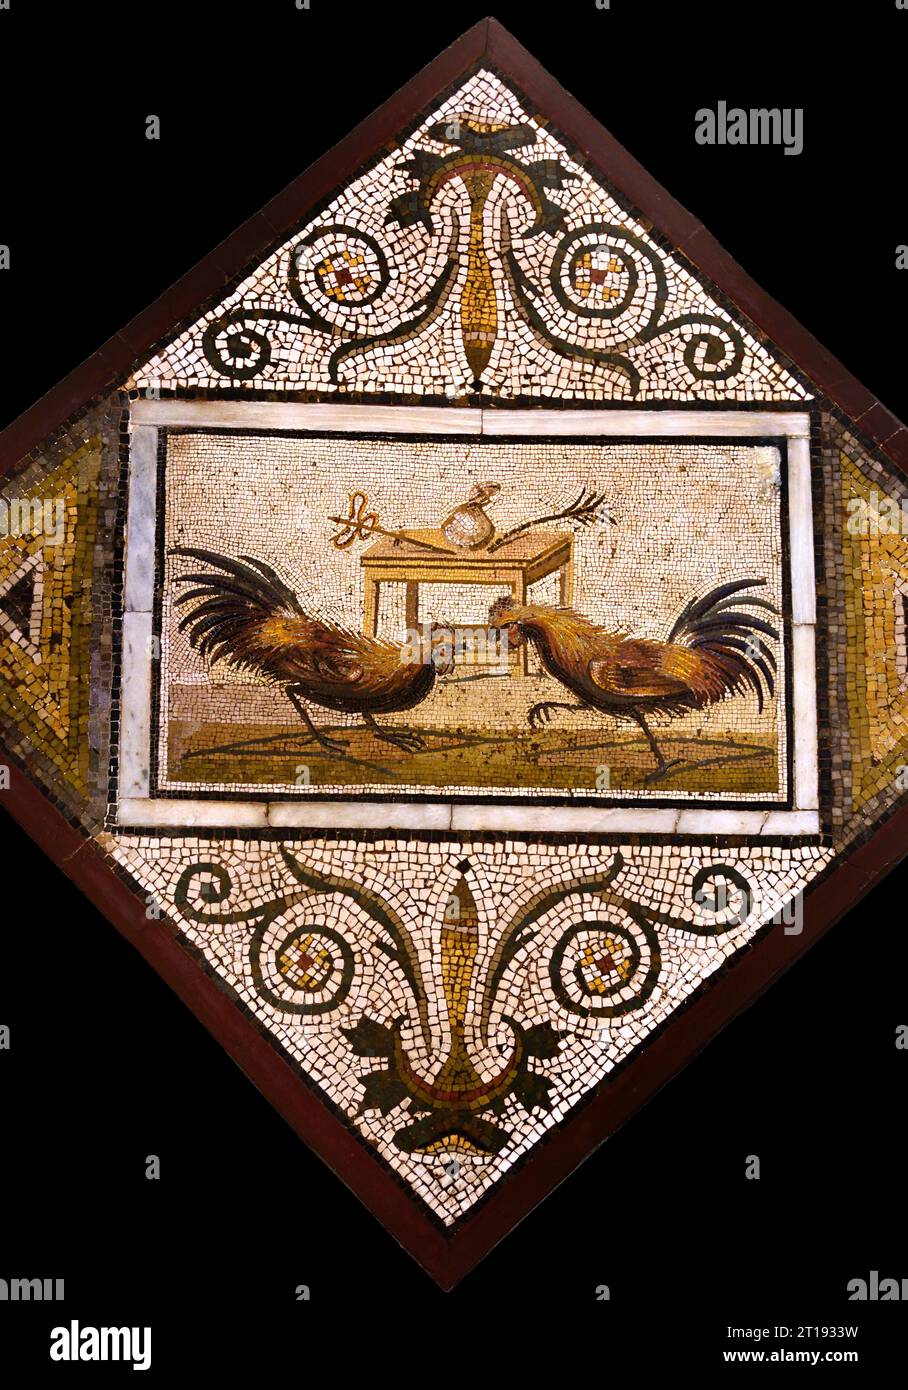 La civiltà romana, il mosaico raffigurante la lotta tra galloni, il mosaico della città romana di Pompei si trova vicino a Napoli, nella regione Campania d'Italia. Pompei fu sepolta sotto 4-6 m di cenere vulcanica e pomice nell'eruzione del Vesuvio nel 79 d.C. Italia, Museo, Napoli, Foto Stock